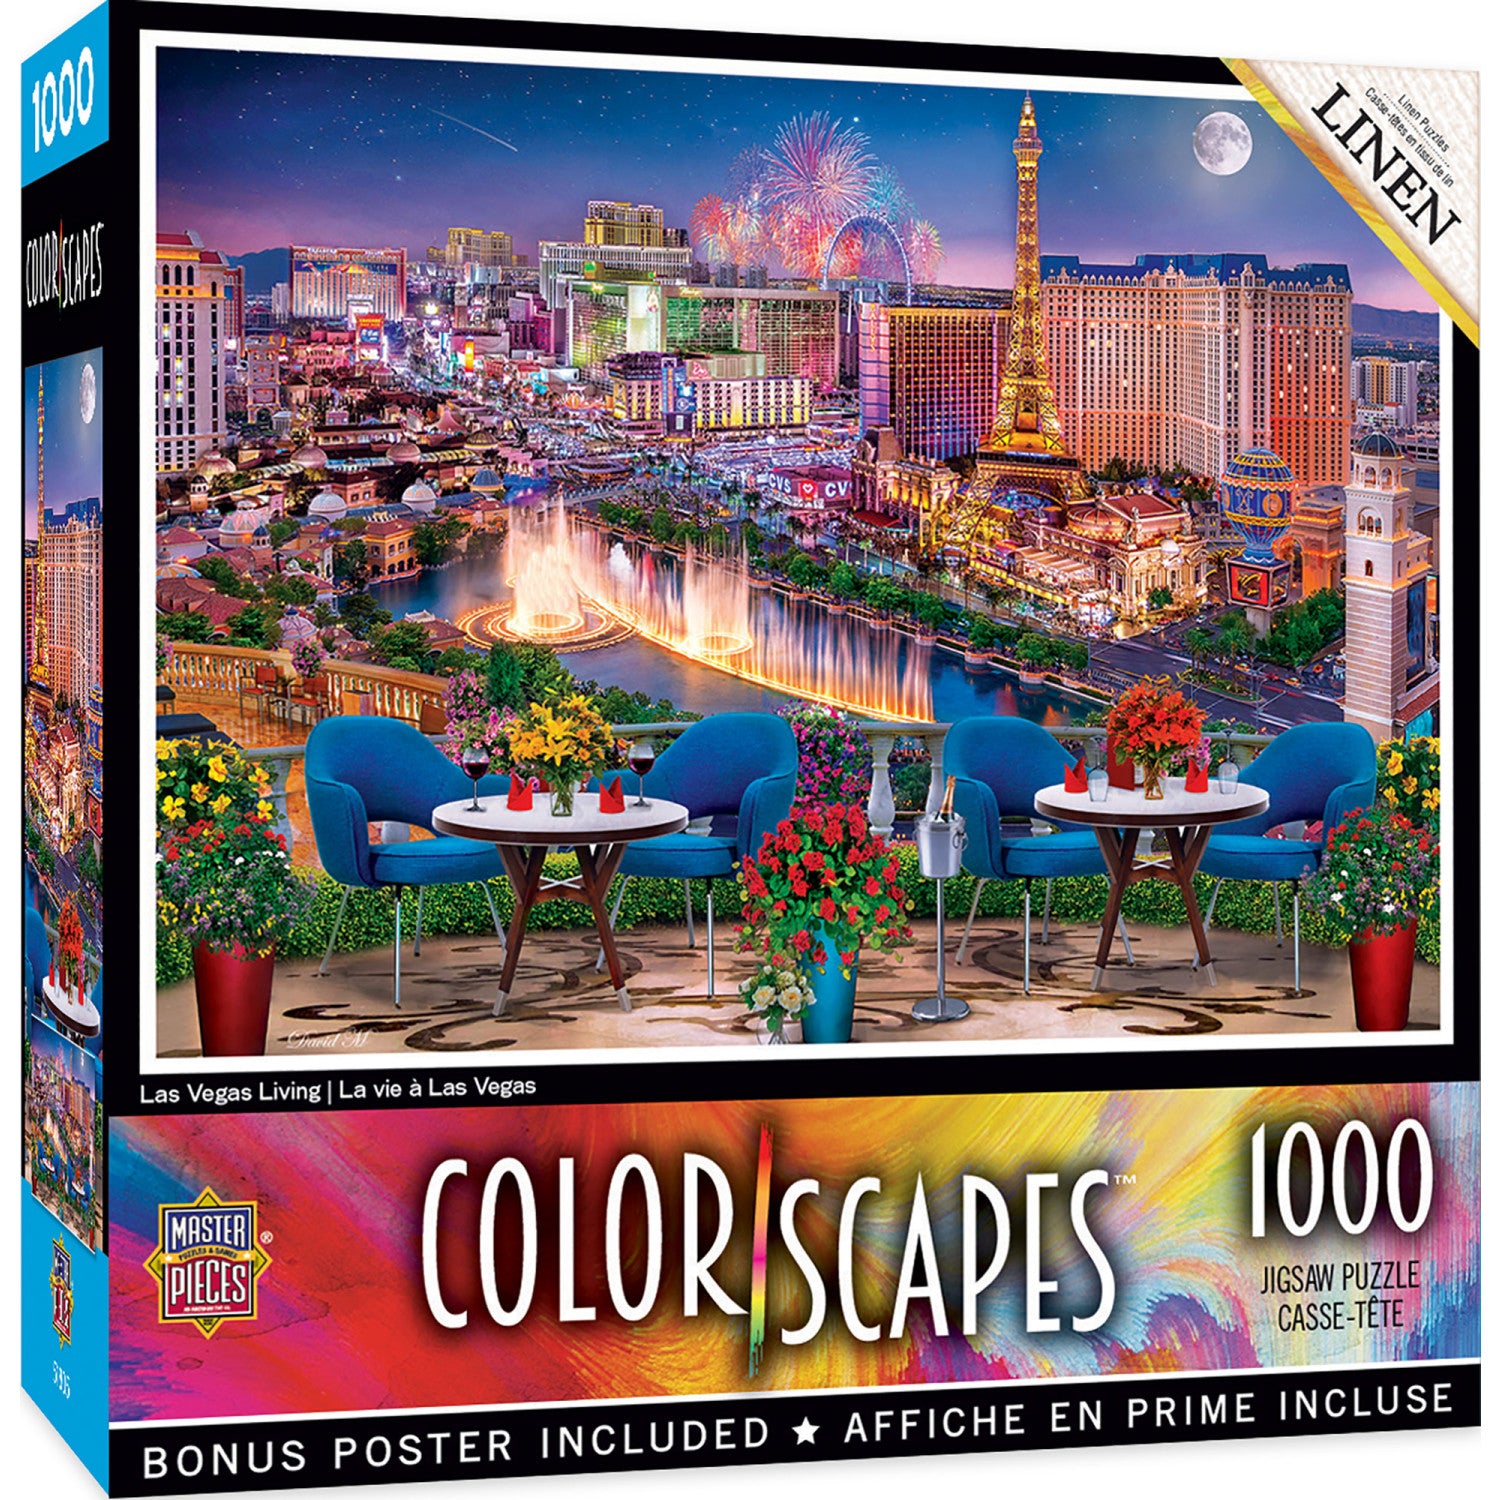 Colorscapes - Las Vegas Living 1000 Piece Puzzle